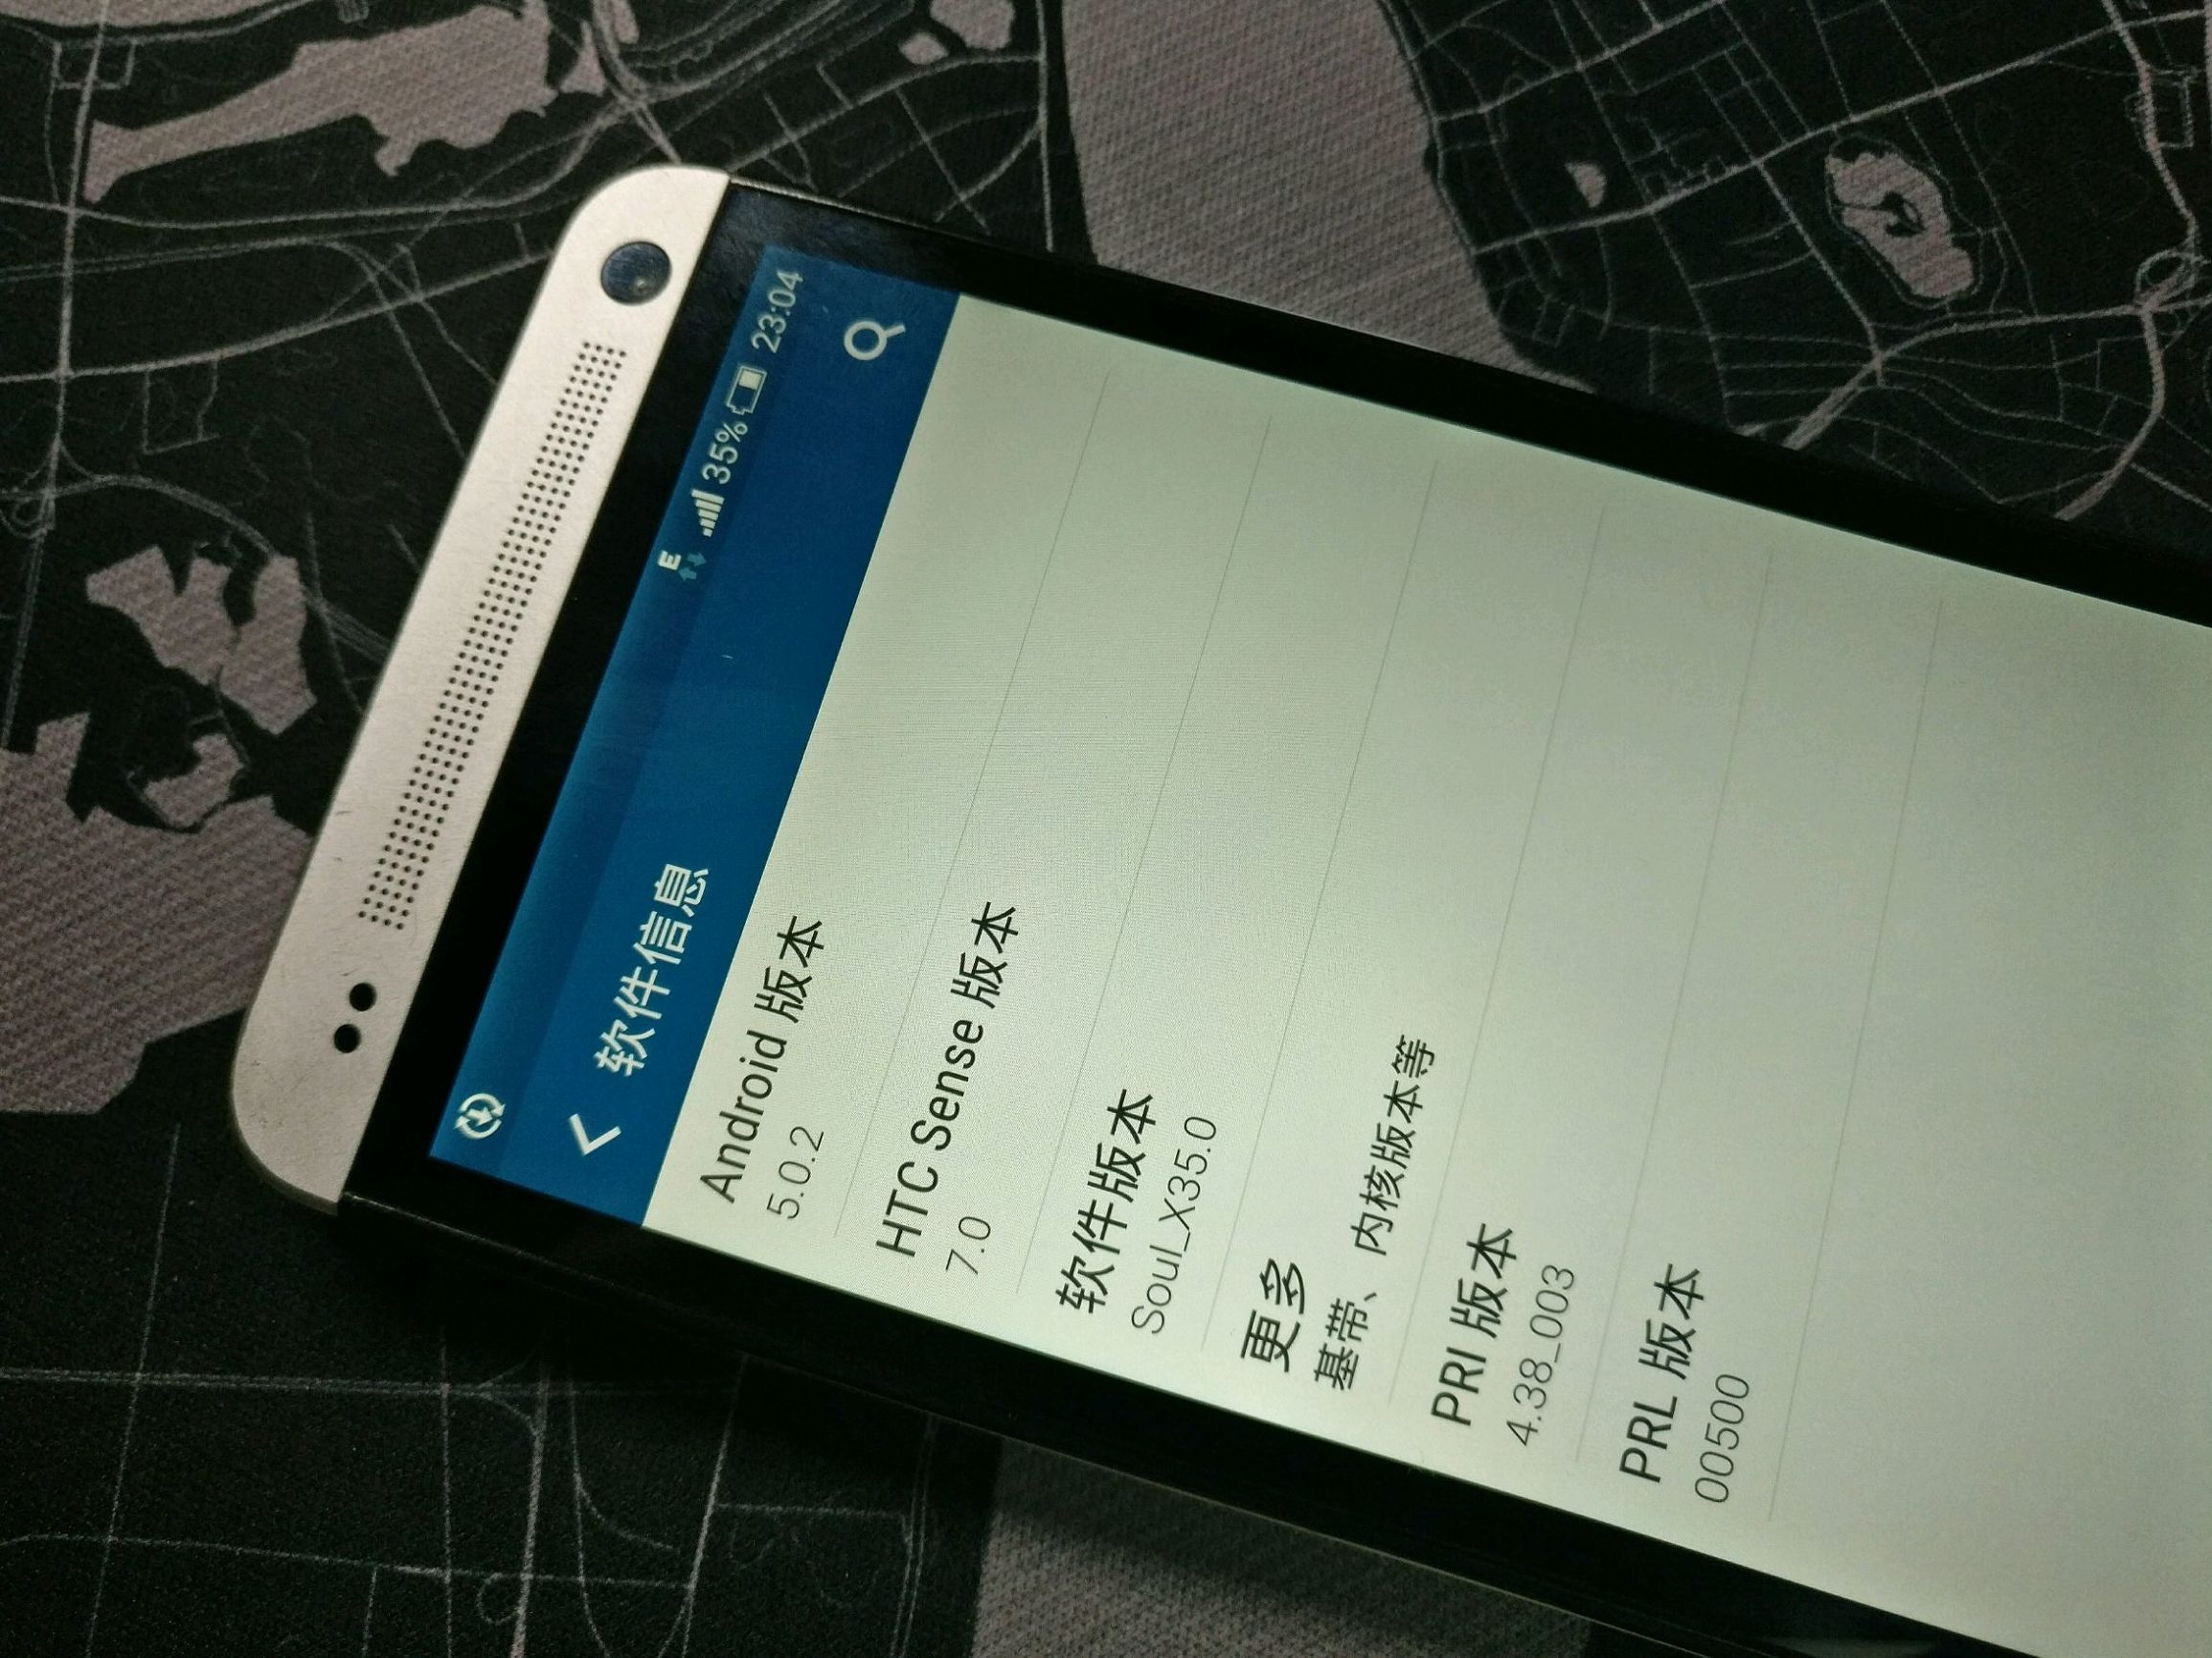 二手系列产品之往日霸者目前220块的HTC M7你要喜欢吗？